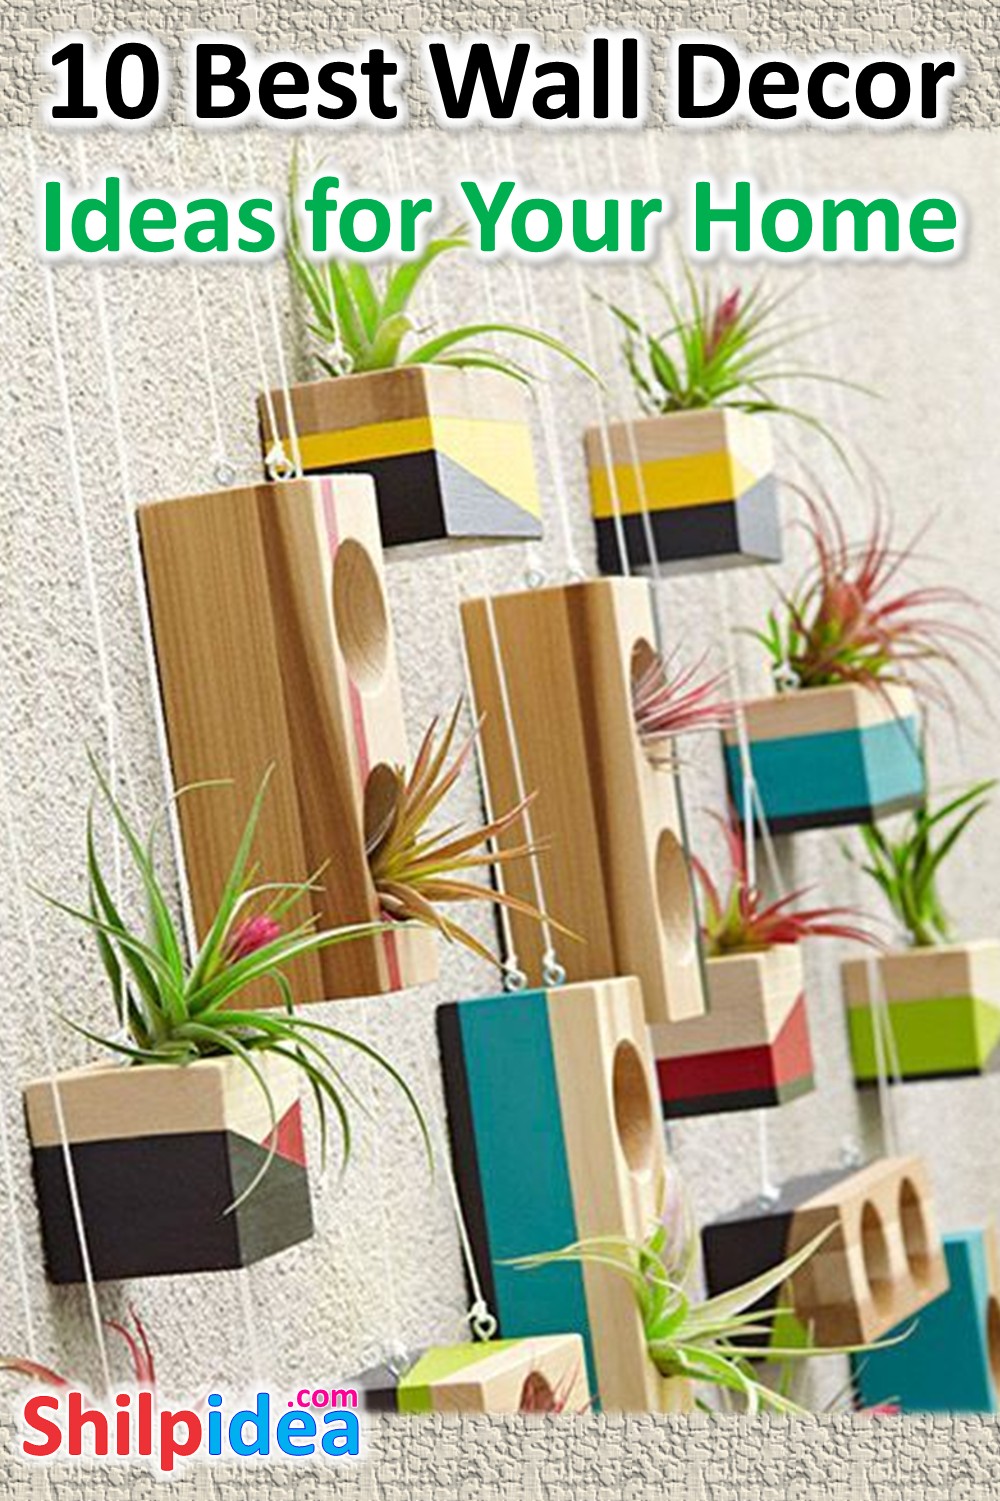 wall-decor-ideas-for-home-shilpidea-pin